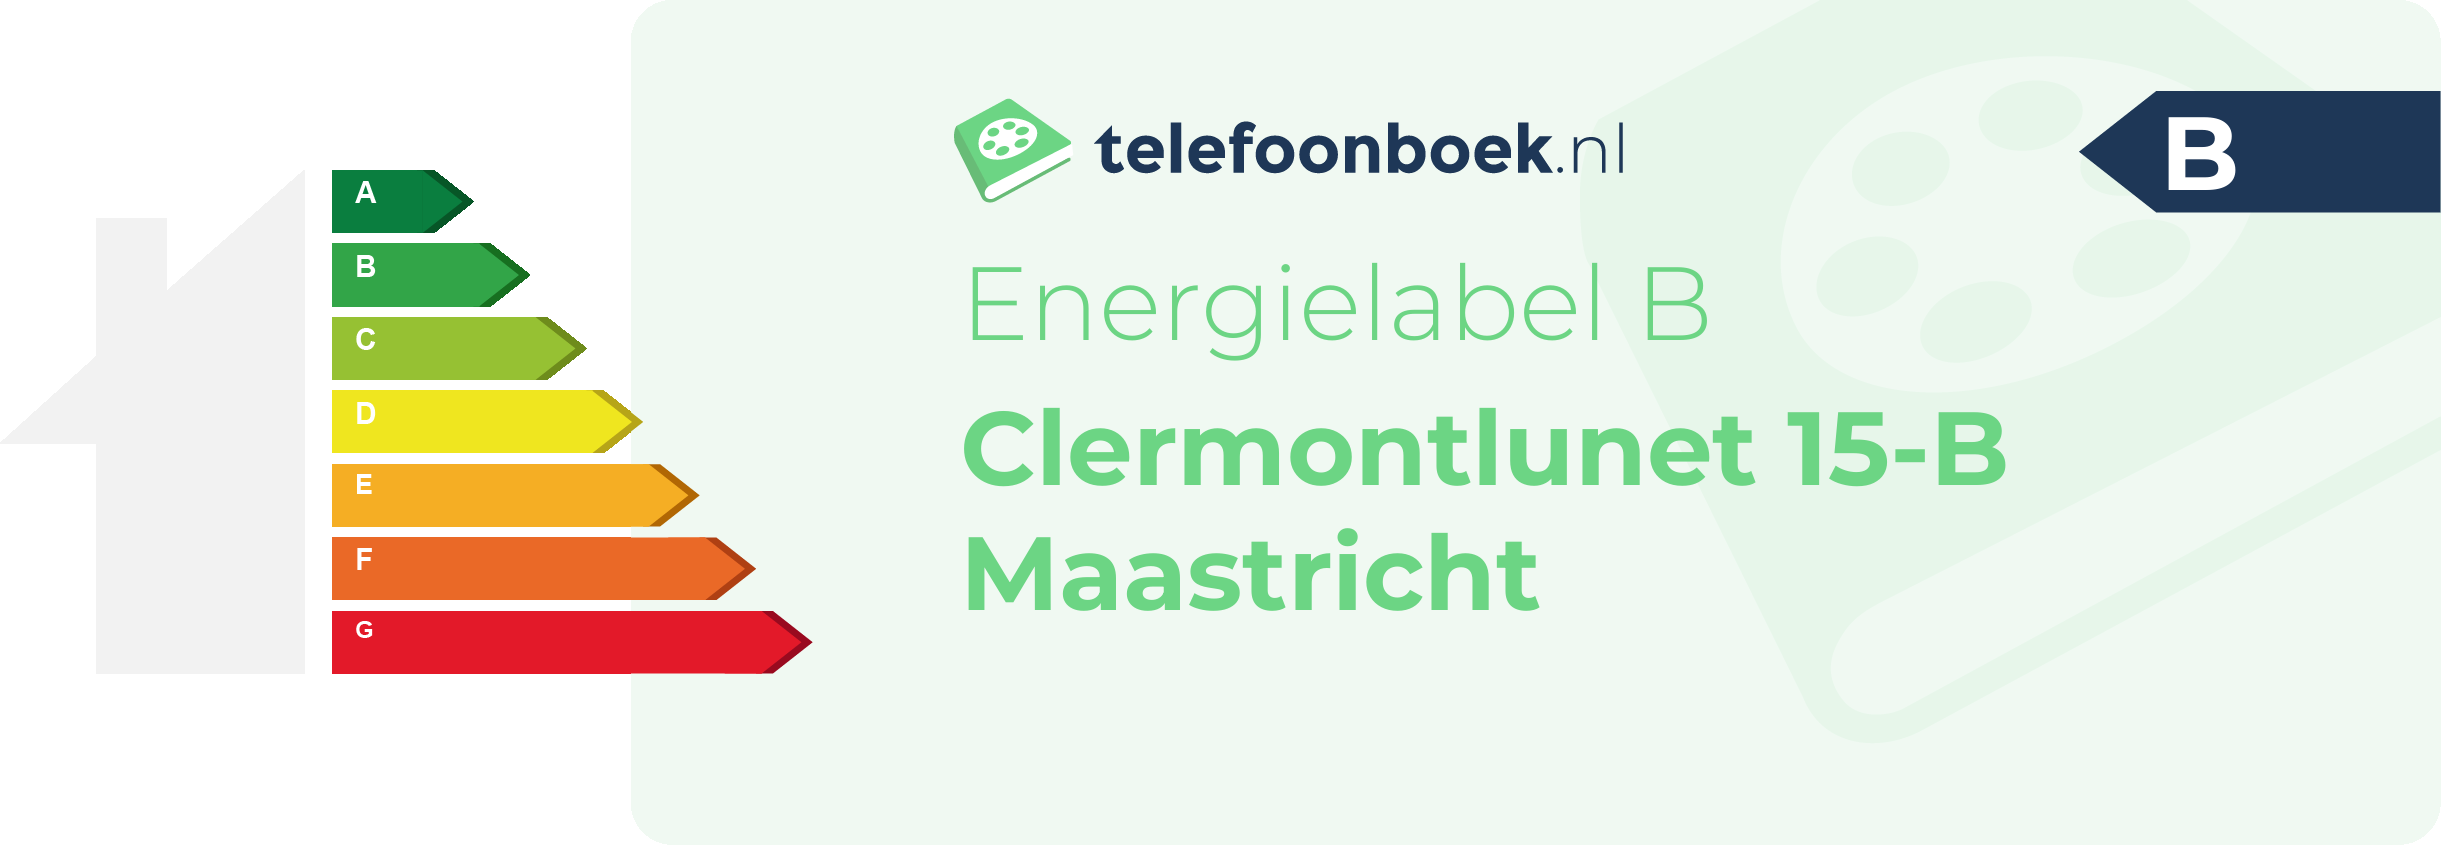 Energielabel Clermontlunet 15-B Maastricht